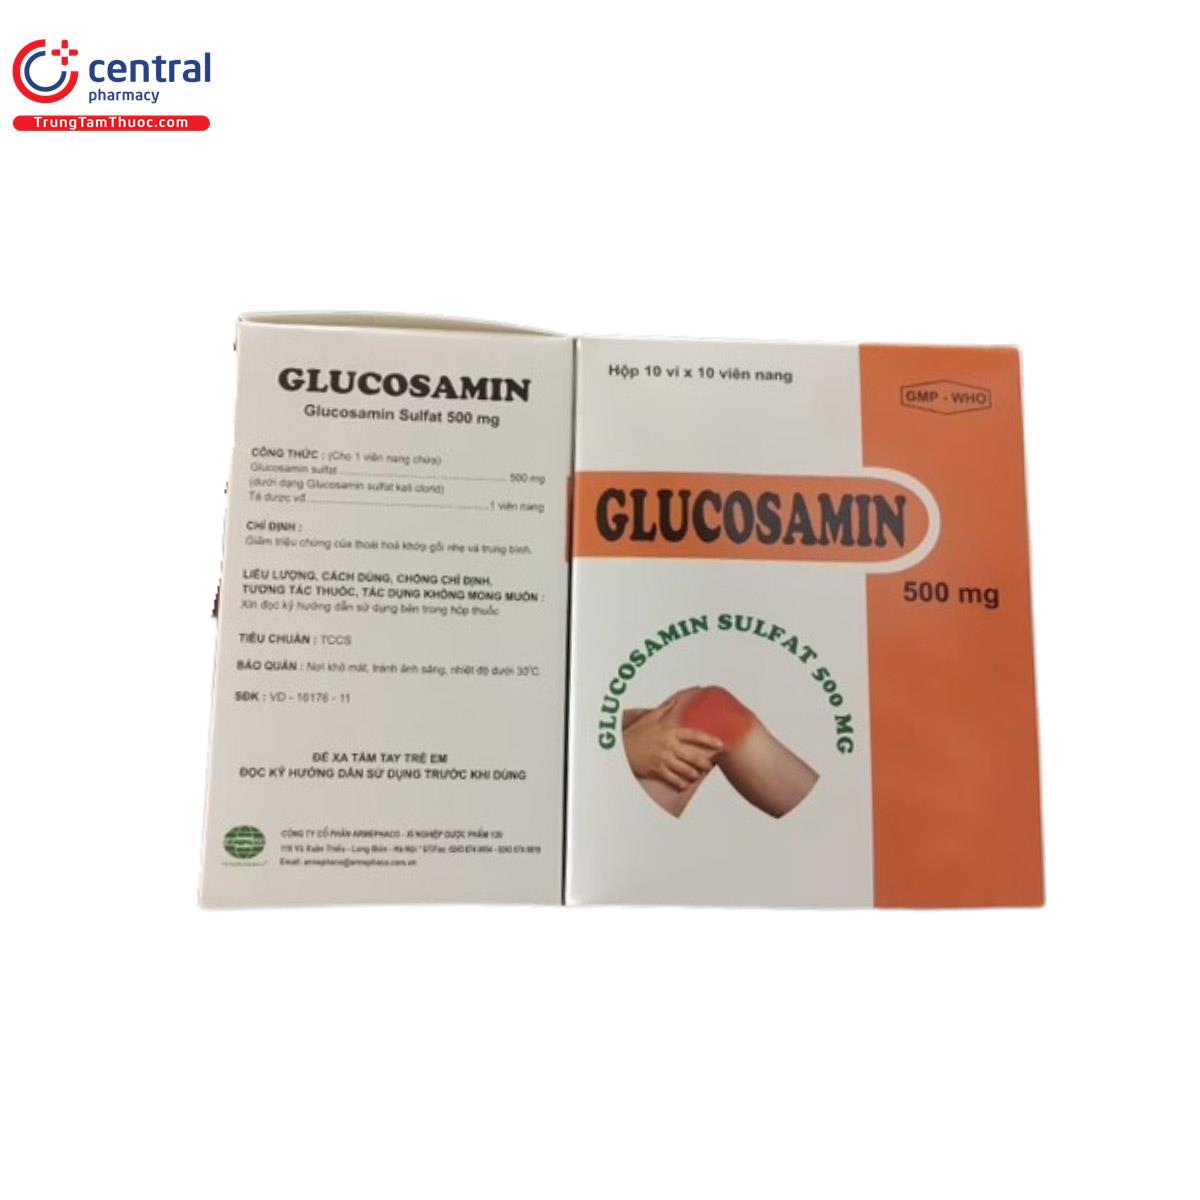 Glucosamin 500mg Armephaco